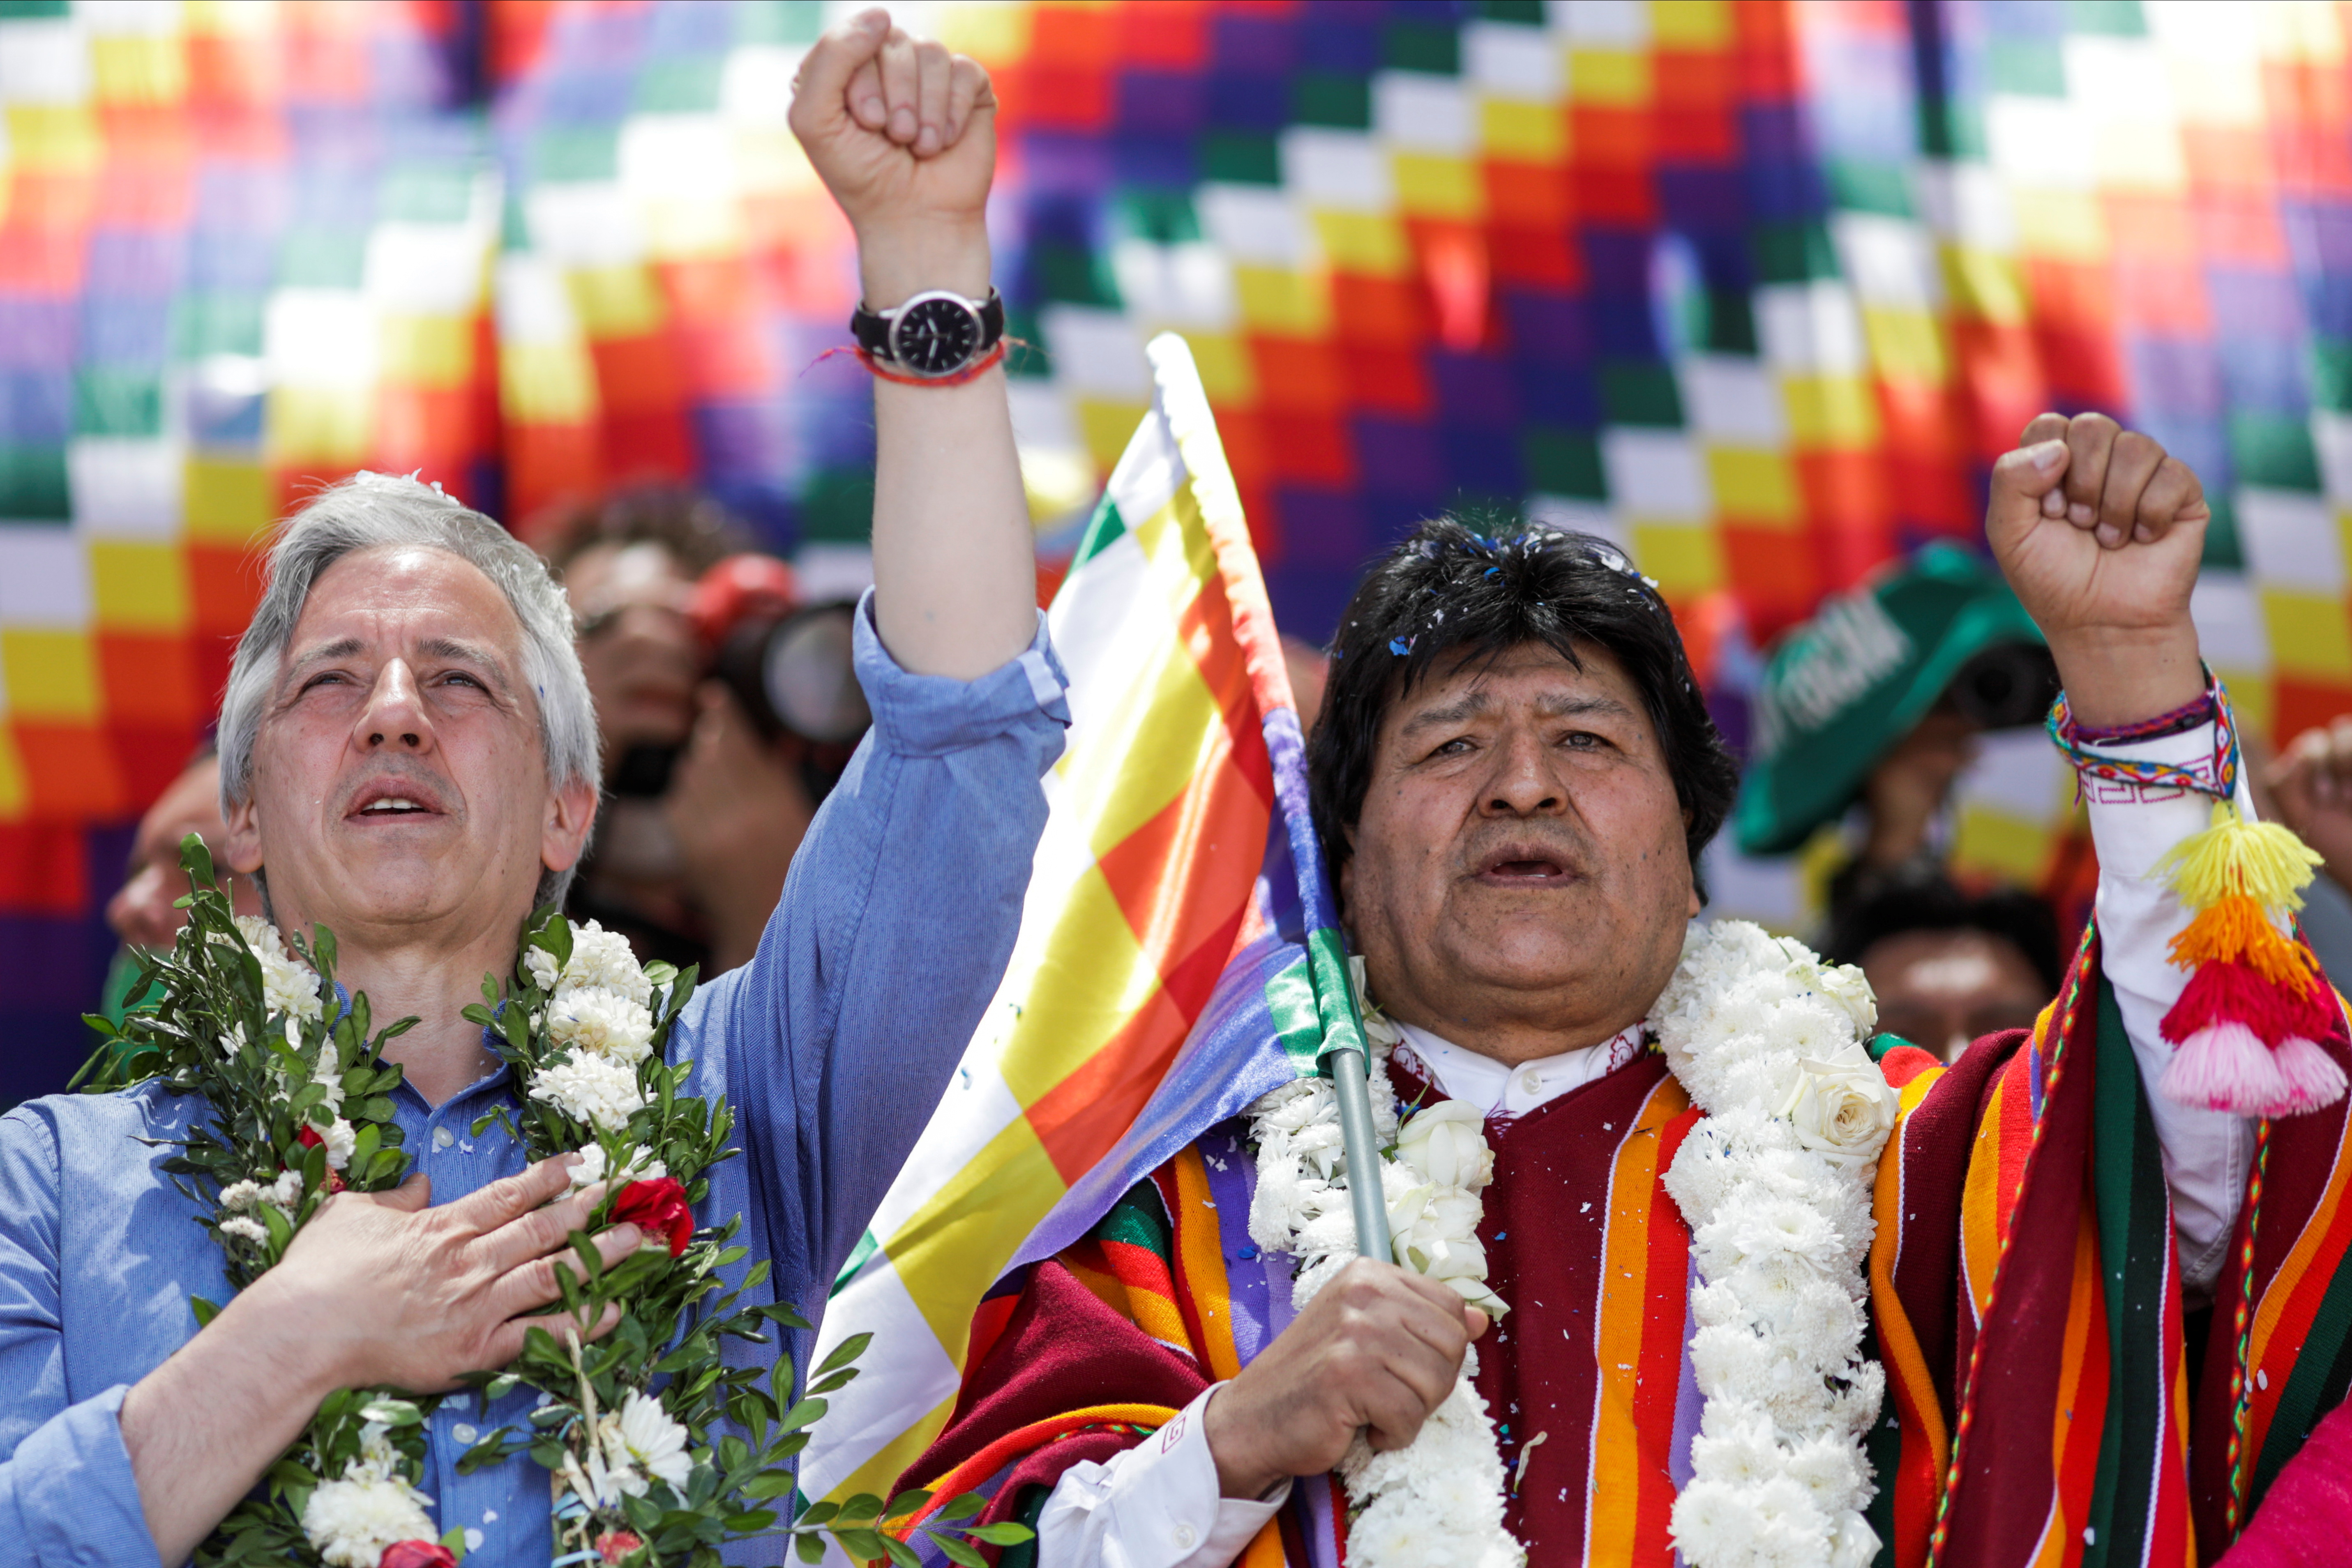 El ex presidente Evo Morales y el ex vicepresidente Alvaro Garcia Linera durante un acto en 2020. Morales definió a su vicepresidente durante catorce años, como “un enemigo más” (REUTERS/Ueslei Marcelino)